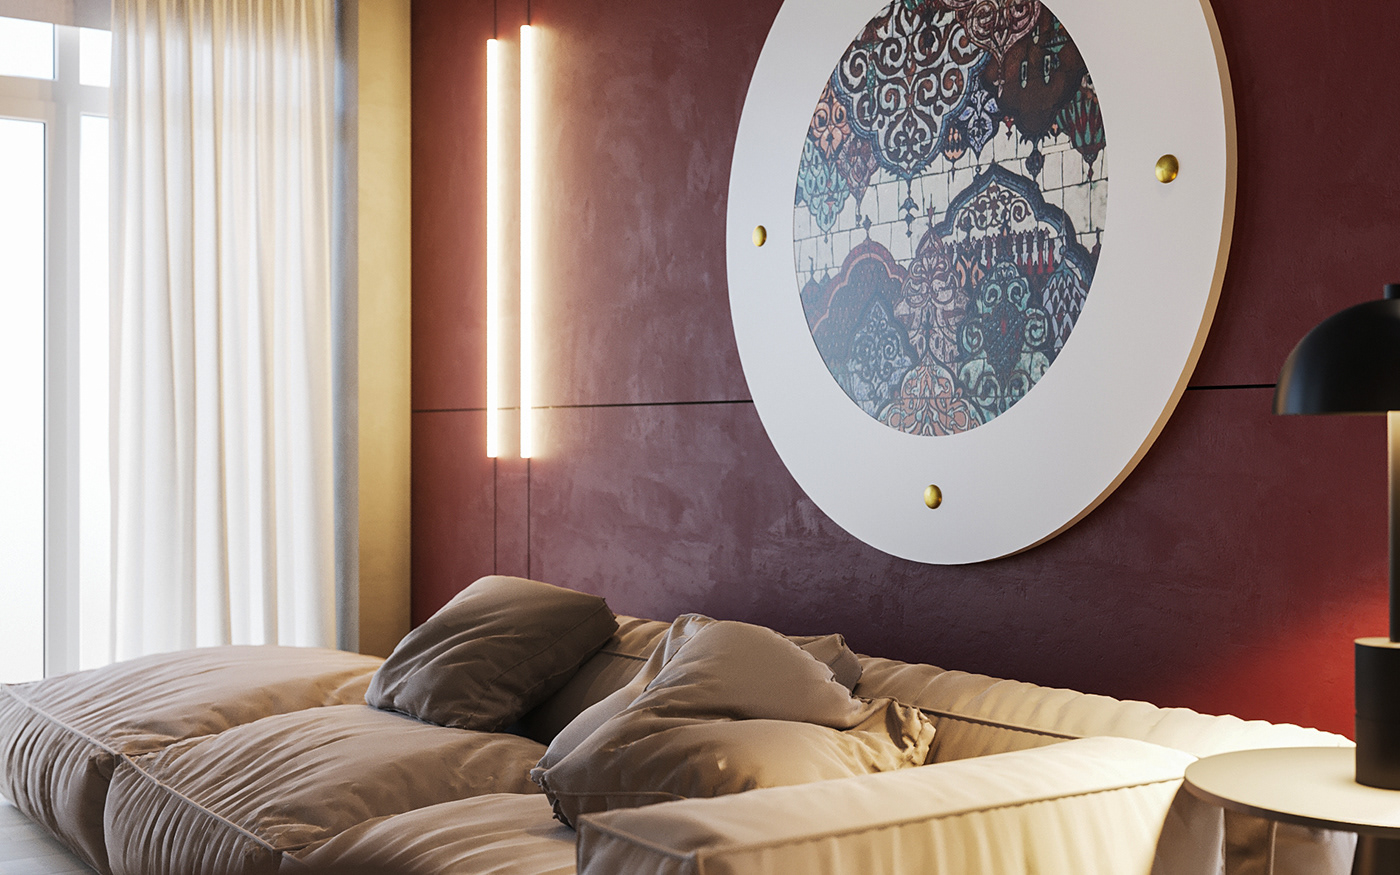 livingroom comforttayn interiordesign дизайнинтерьеракиев designinterior naturalist комфорттаун🏡 Minimalism дизайнинтерьера   design